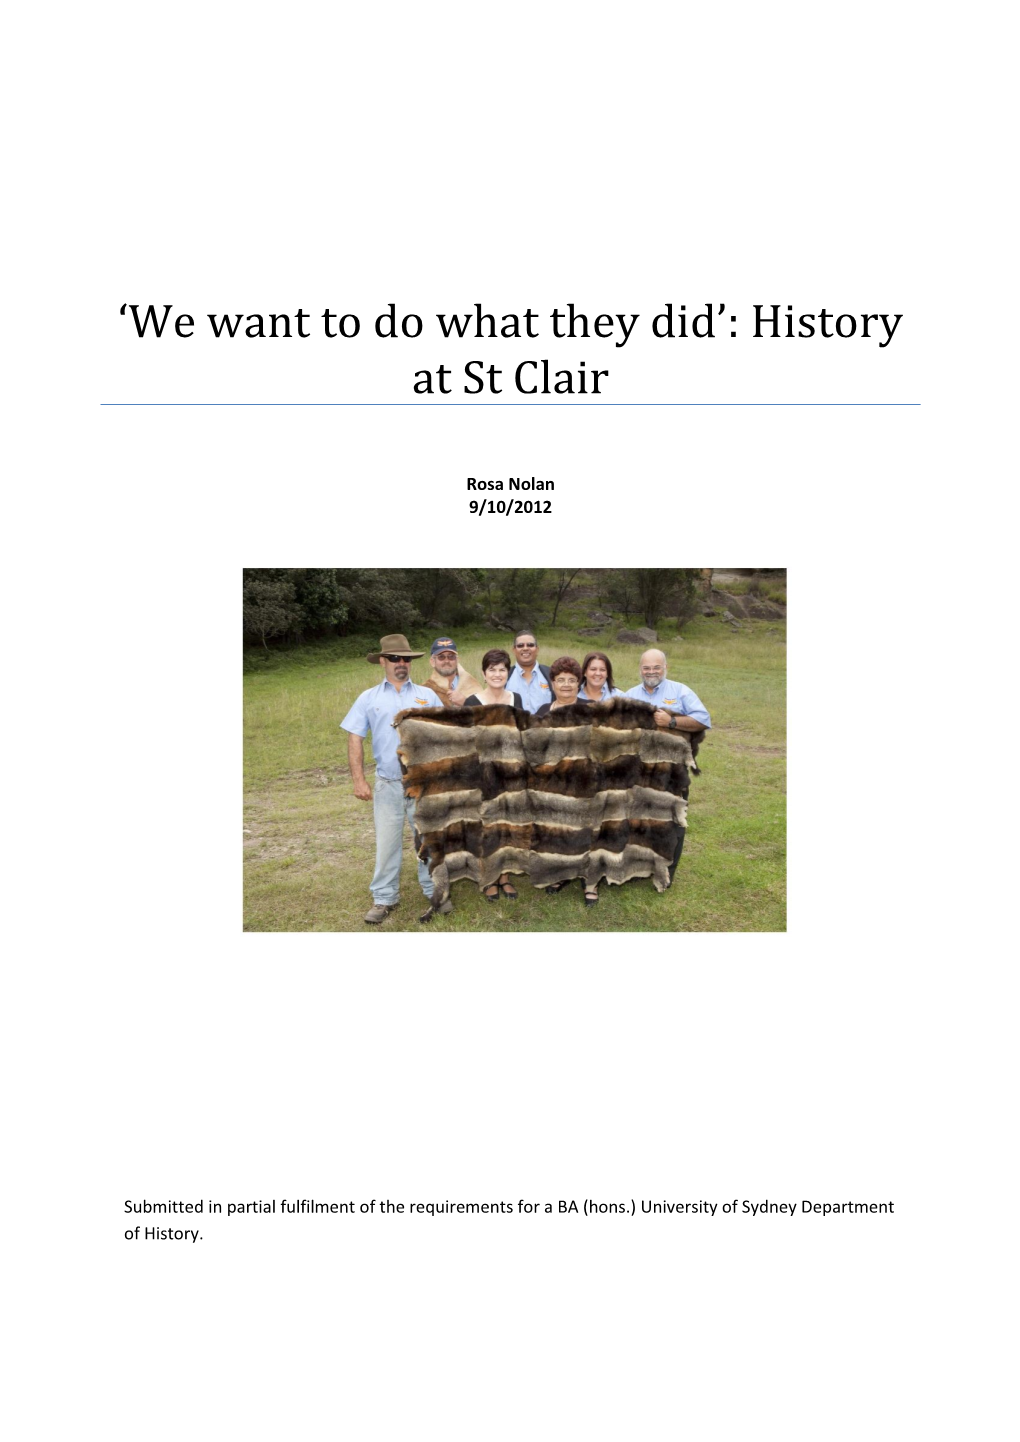 History at St Clair